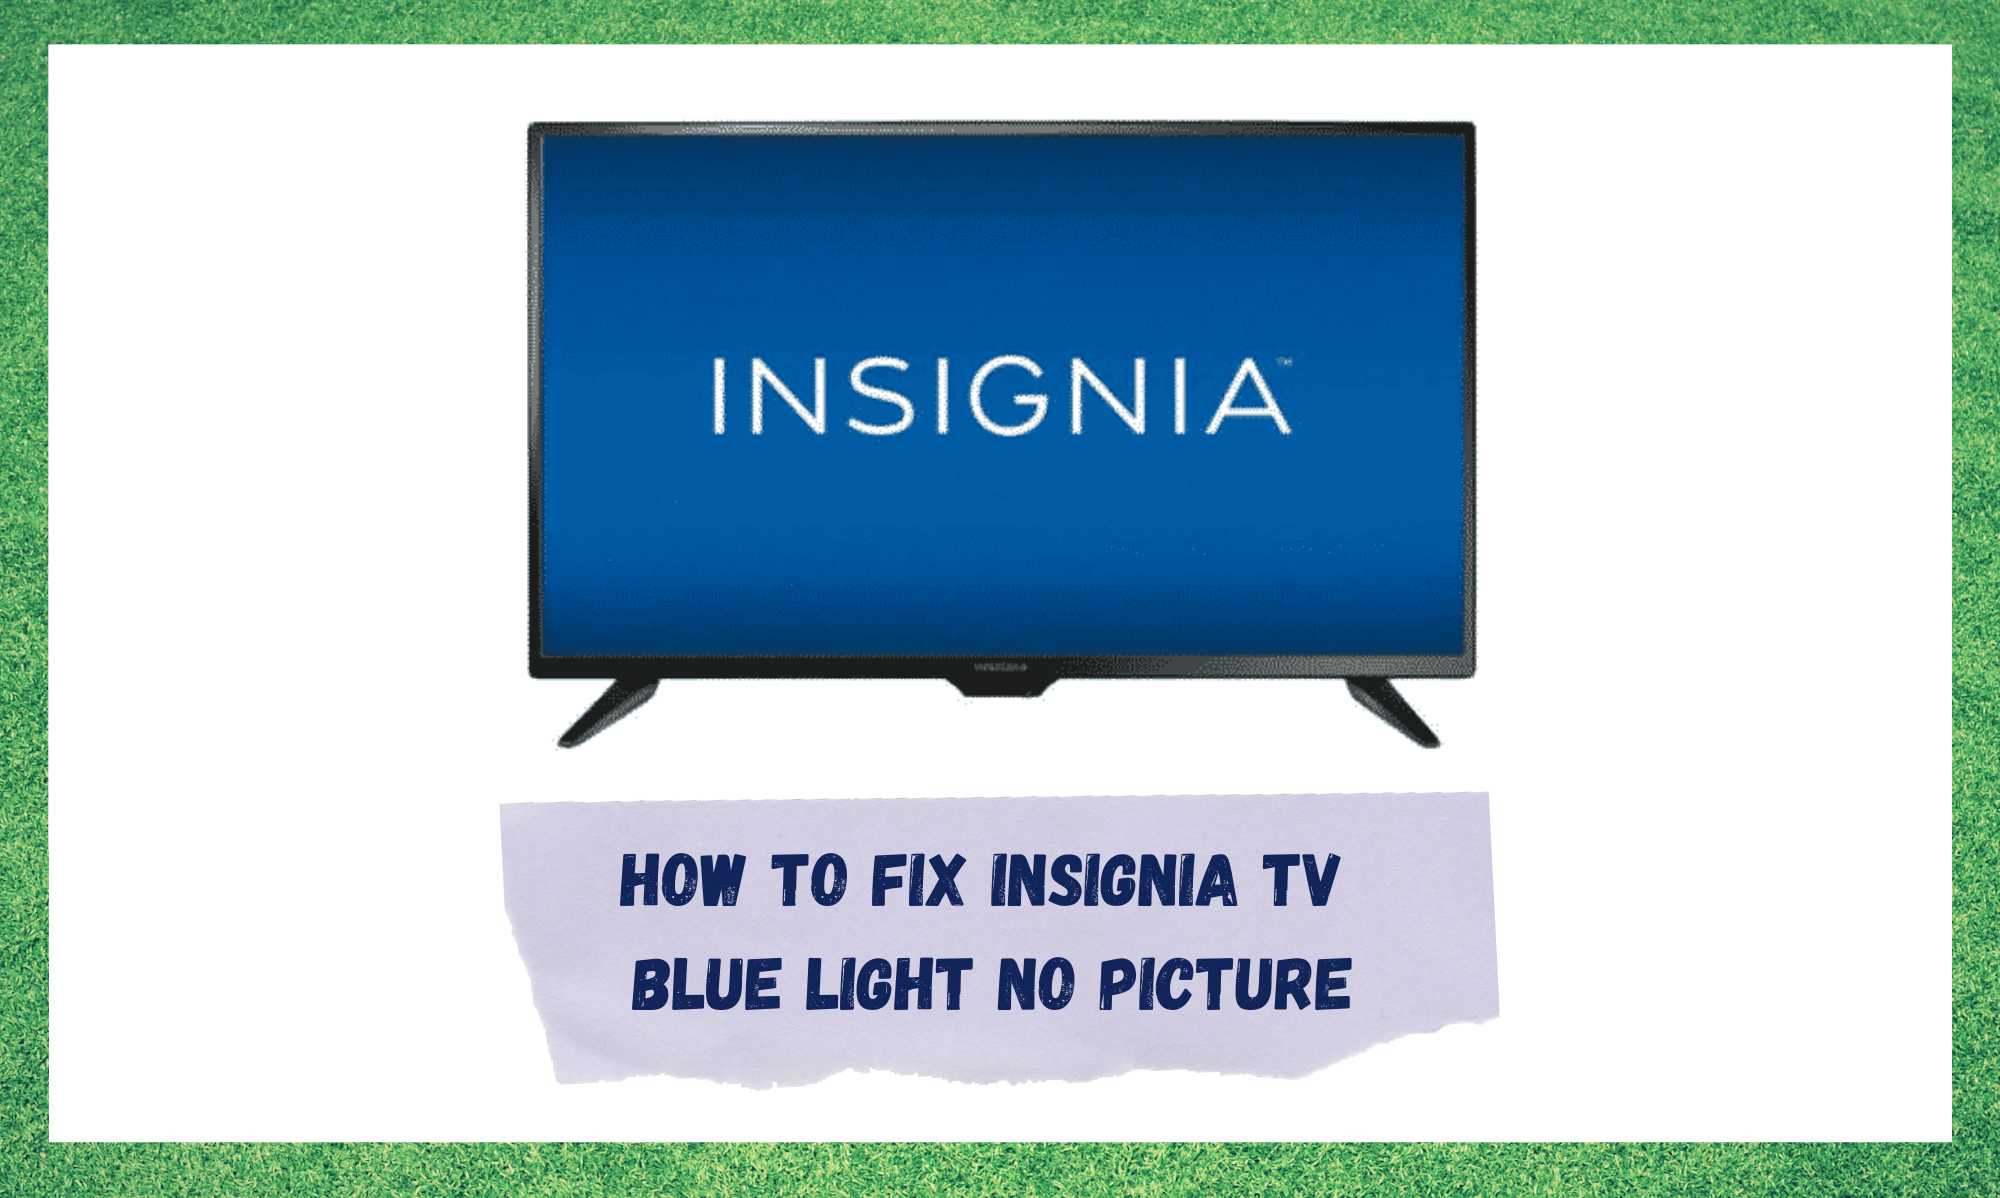 Insignia TV ਬਲੂ ਲਾਈਟ ਕੋਈ ਤਸਵੀਰ ਨਹੀਂ: ਠੀਕ ਕਰਨ ਦੇ 3 ਤਰੀਕੇ